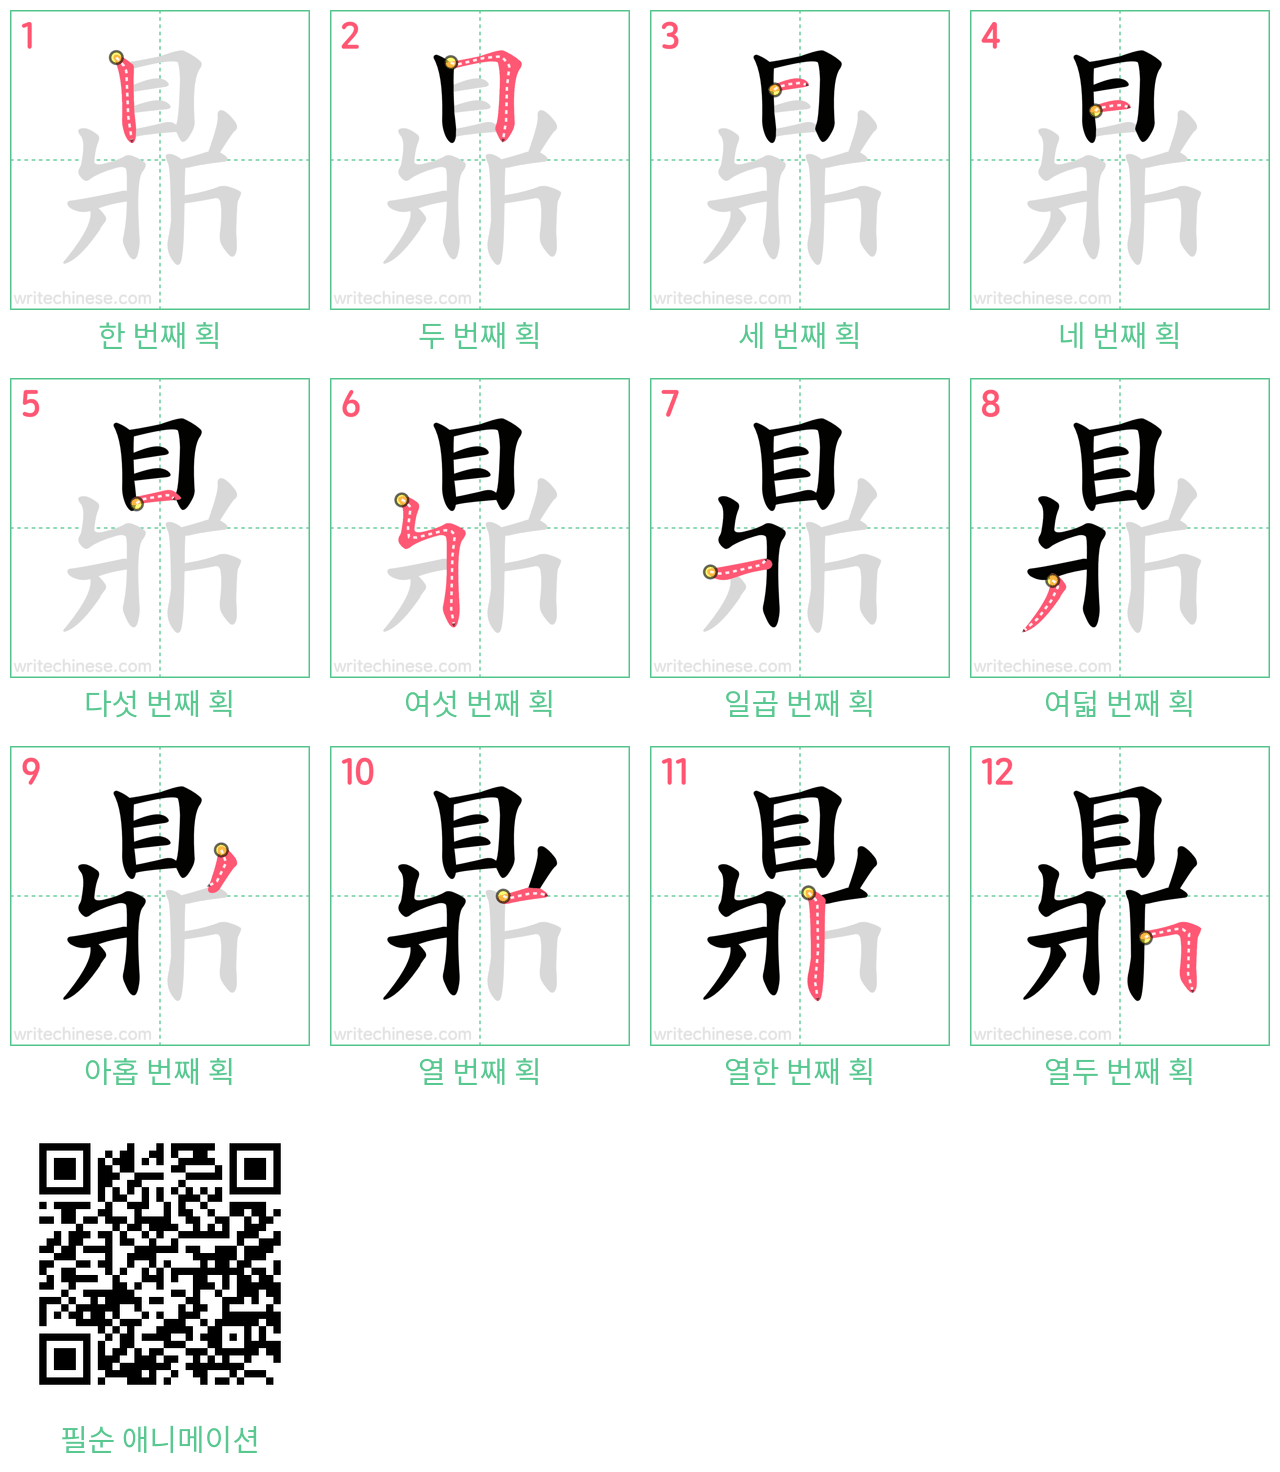 鼎 step-by-step stroke order diagrams